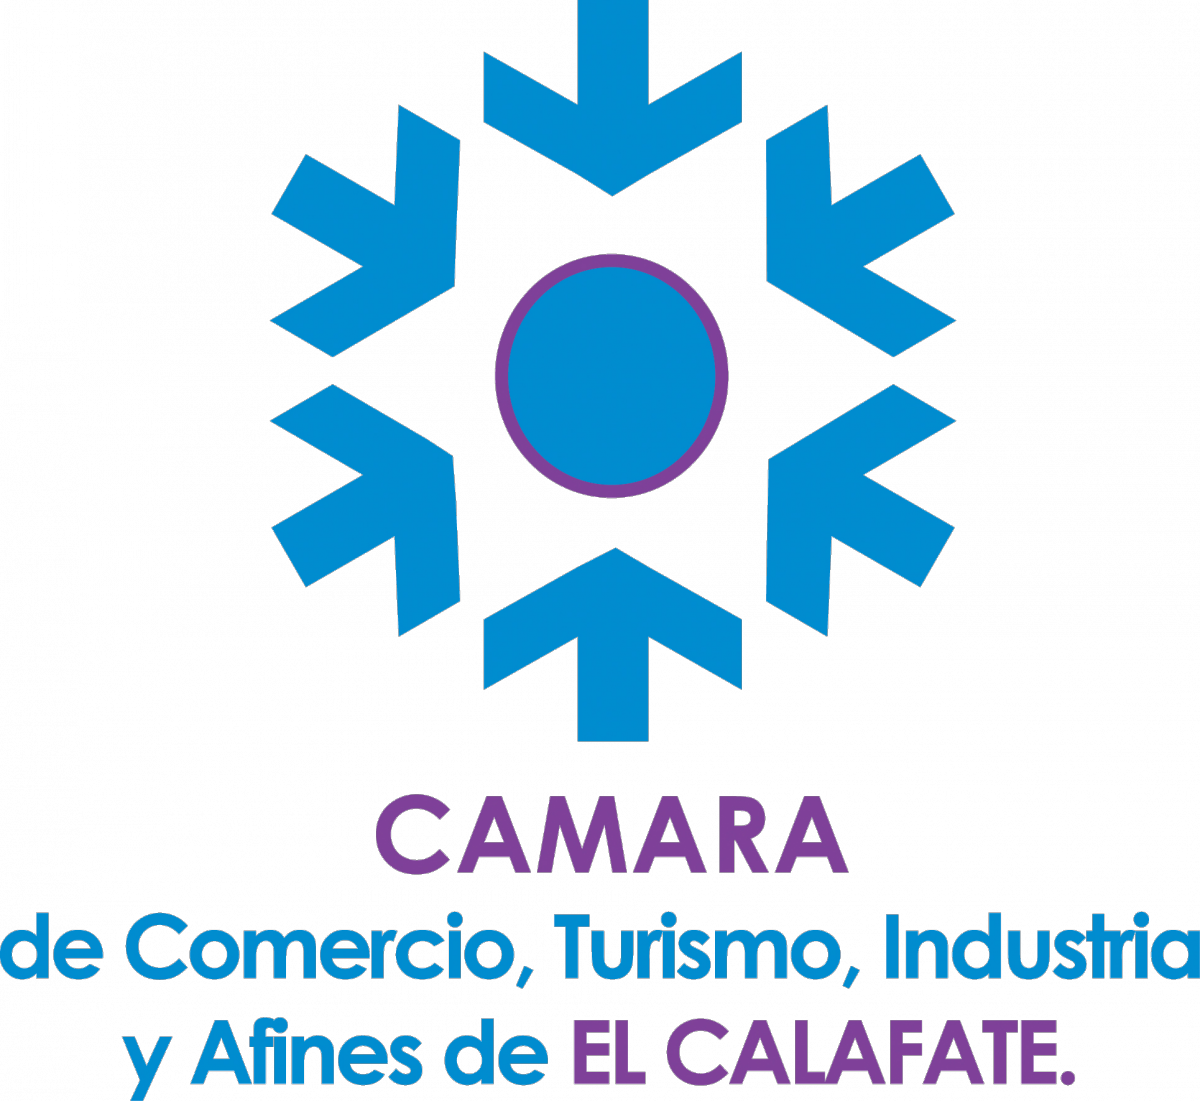 Cámara de Comercio, Turismo, Industria y Afinde de El Calafate.